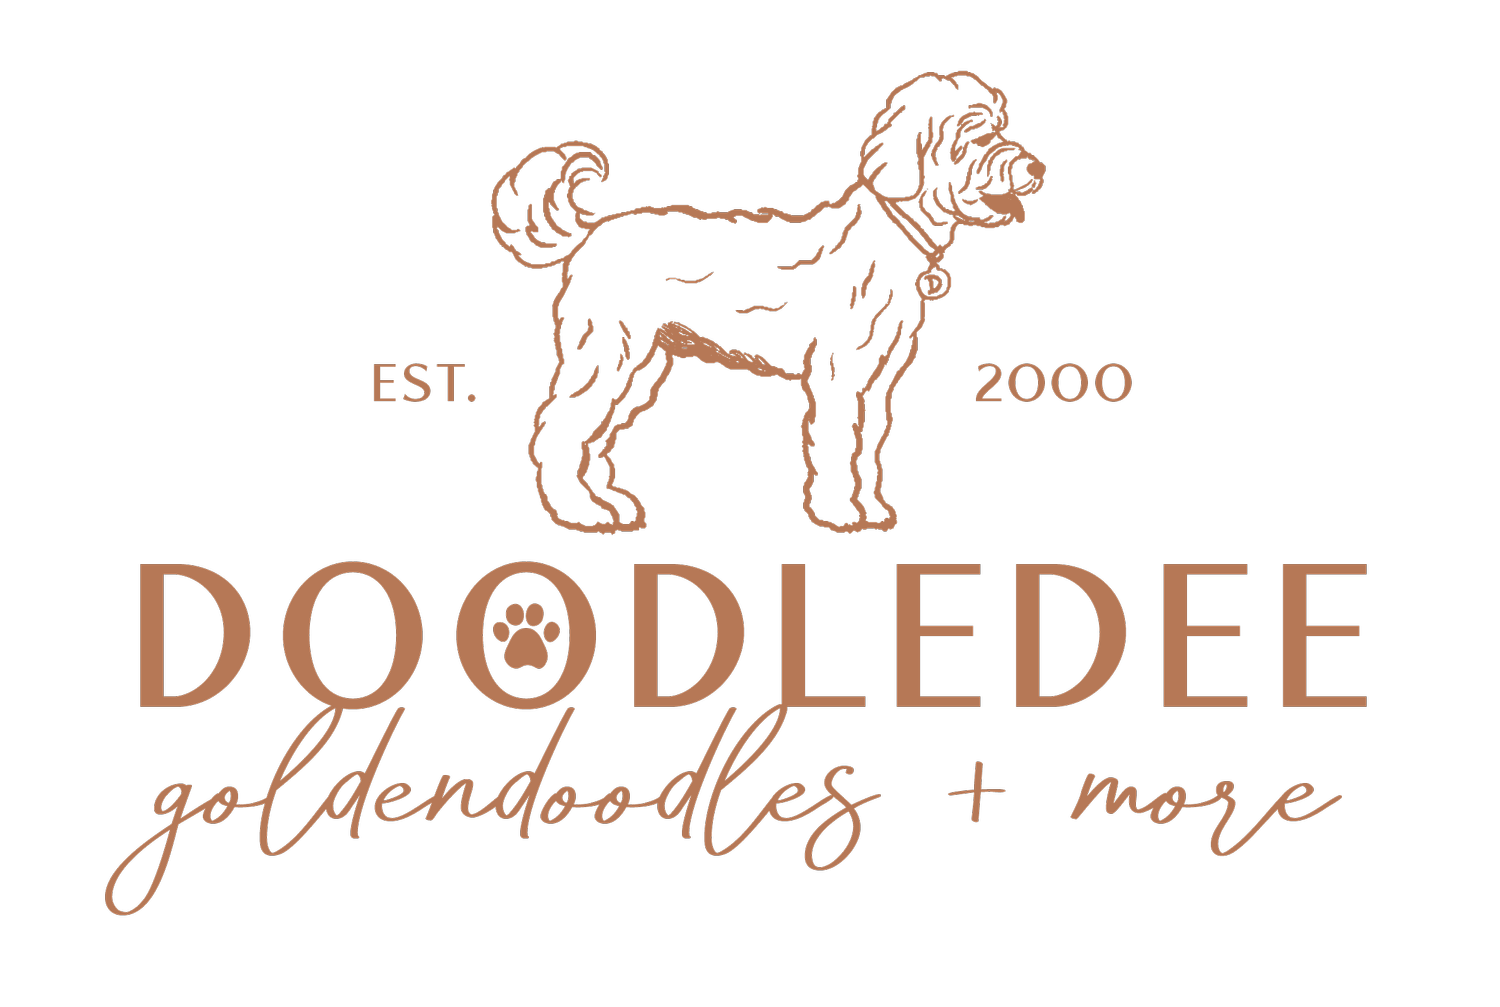 DoodleDee Goldendoodles &amp; More